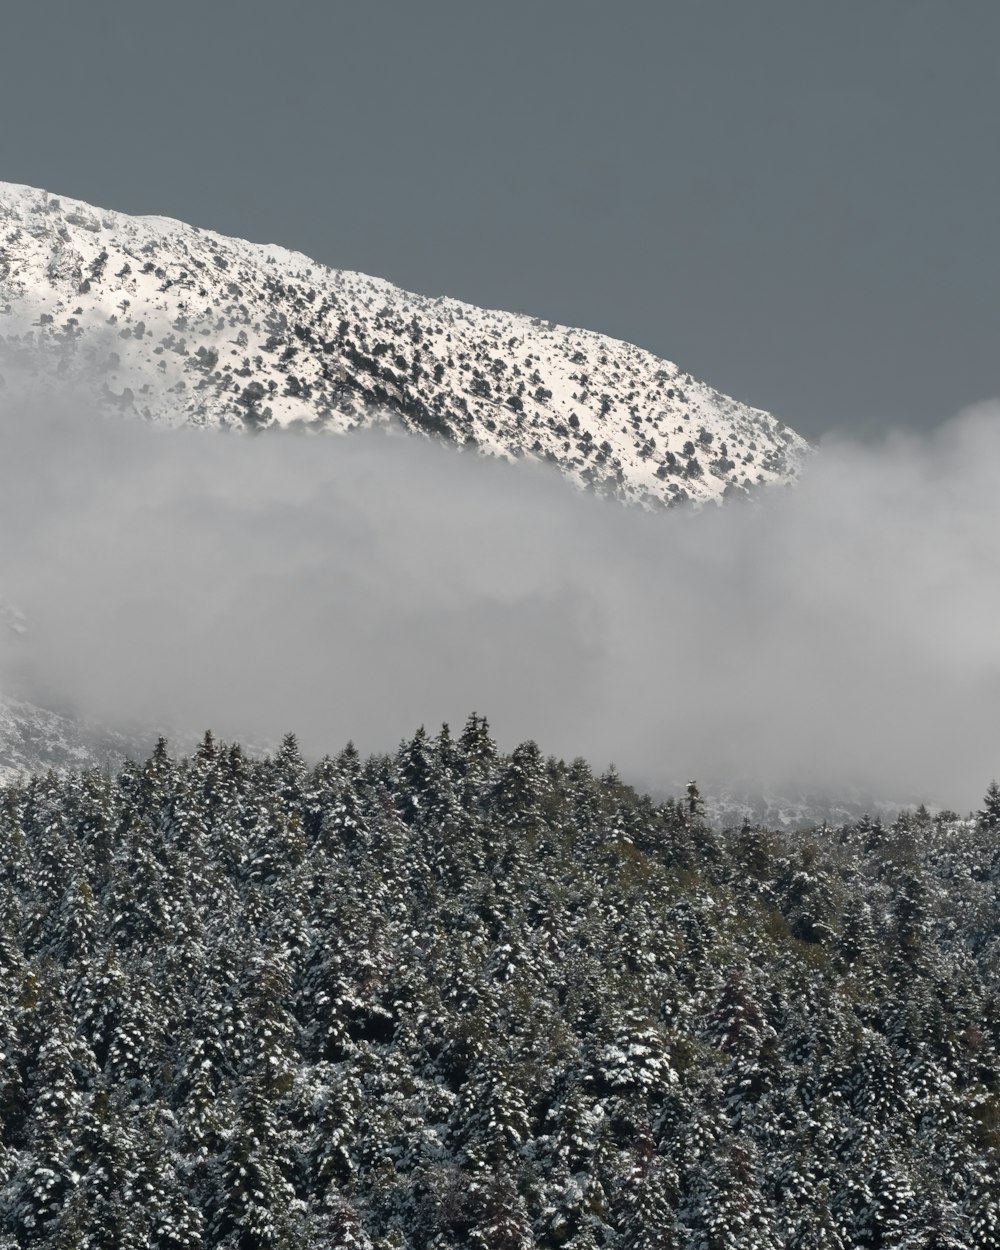 Ein schneebedeckter Berg mit Bäumen darunter